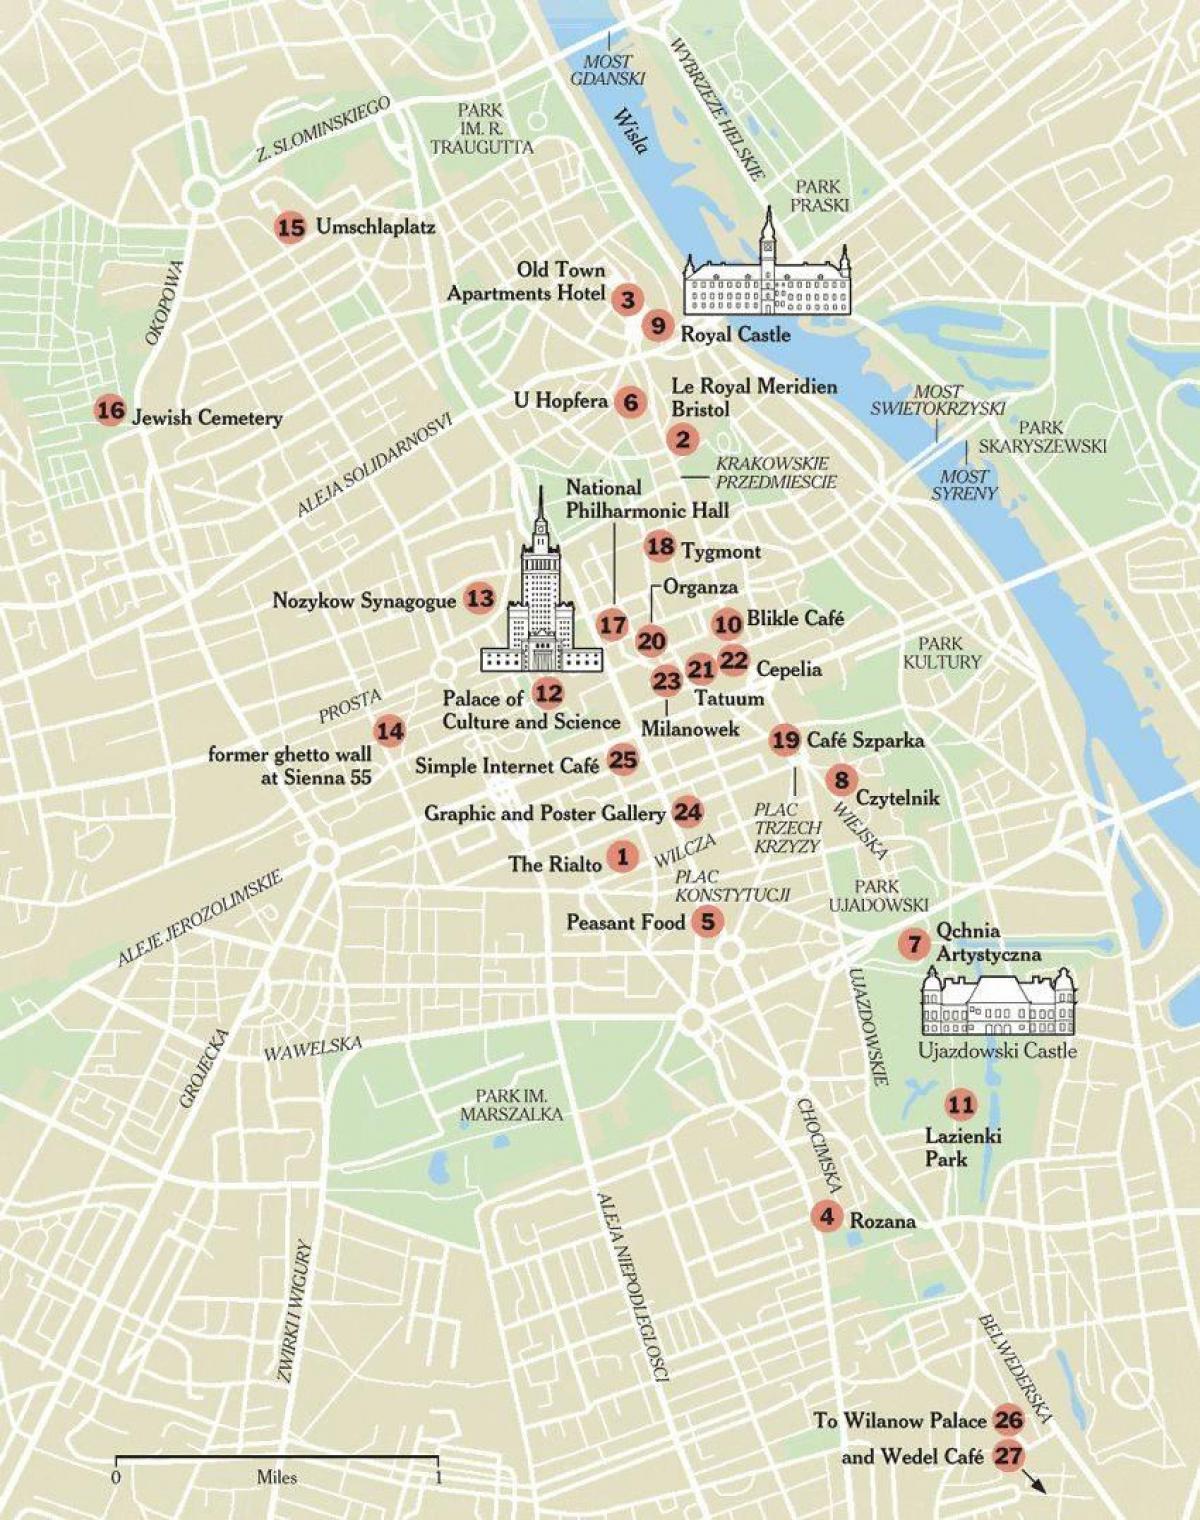 Map of Warsaw walking tour 